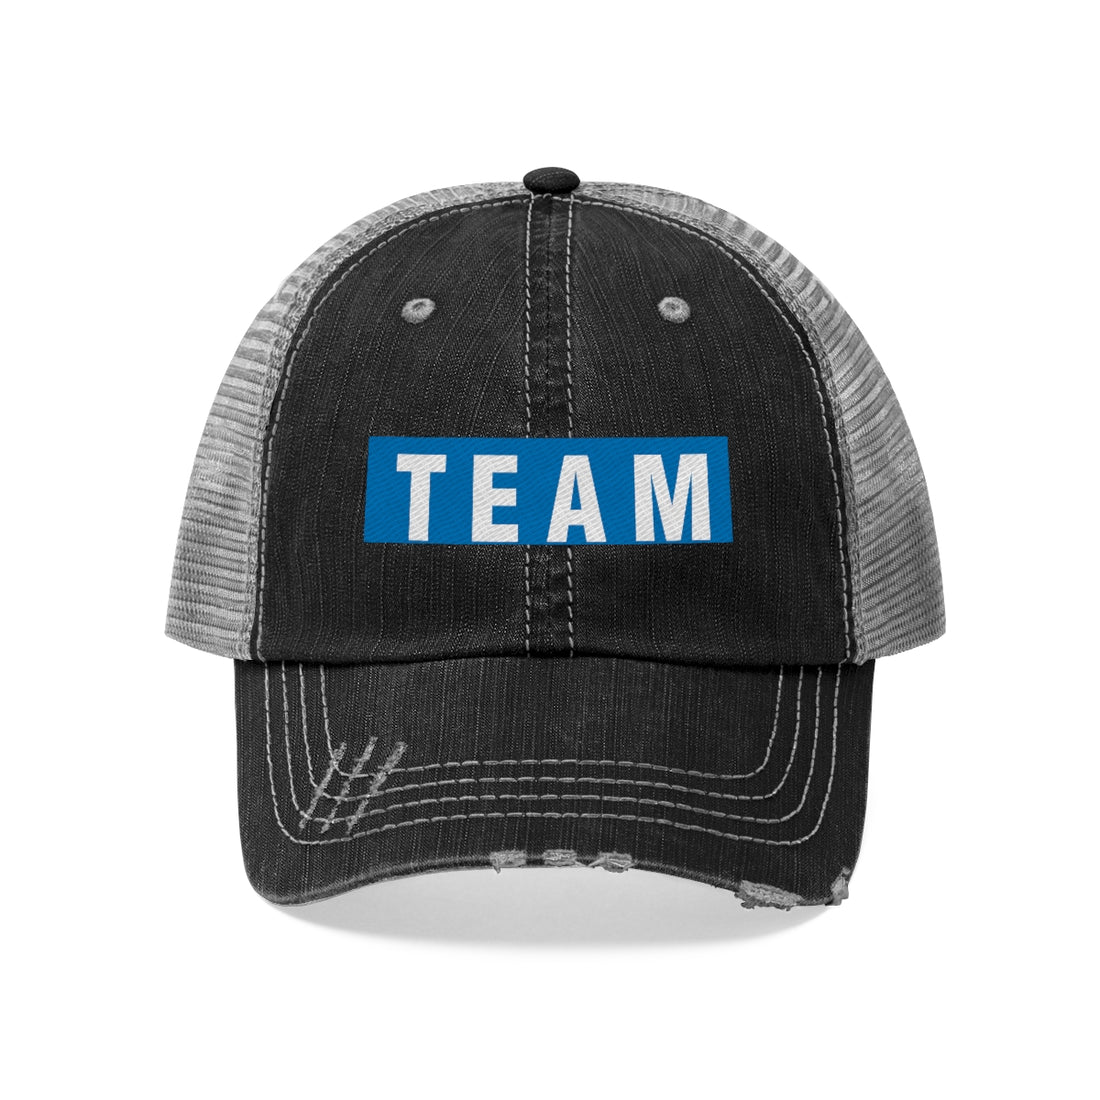 TEAM Trucker Hat